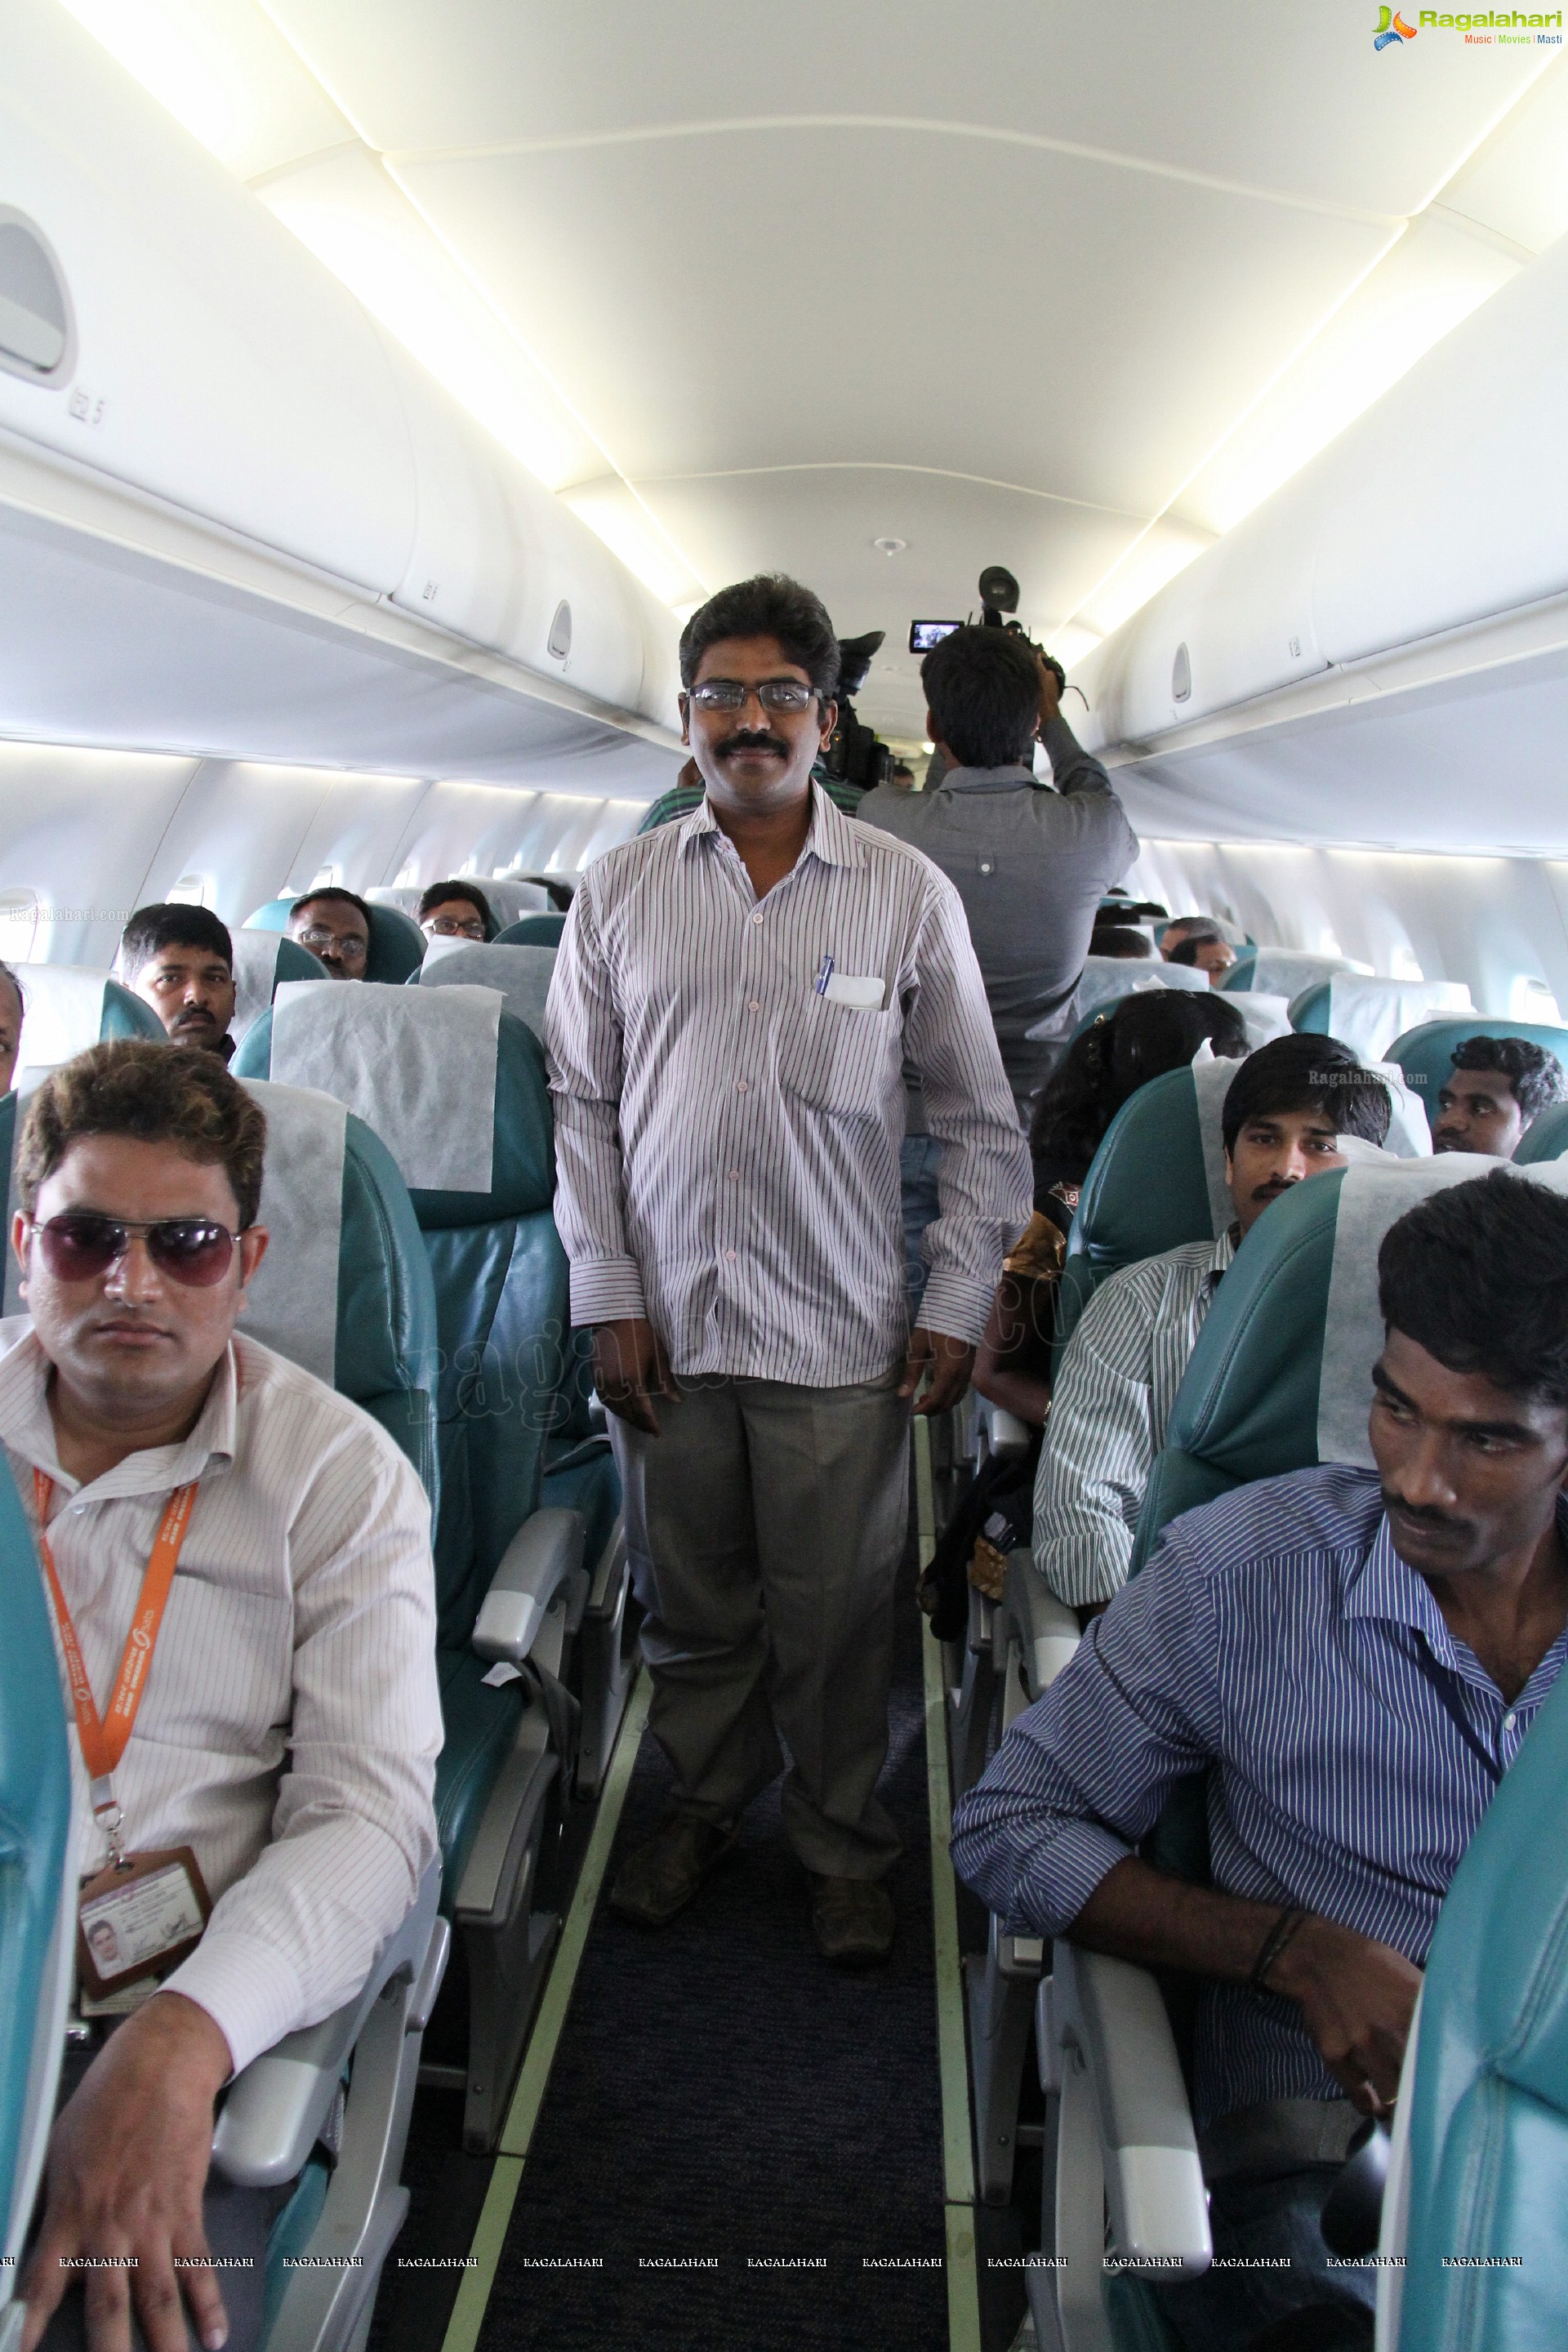 Air Costa Hyderabad Press Meet 